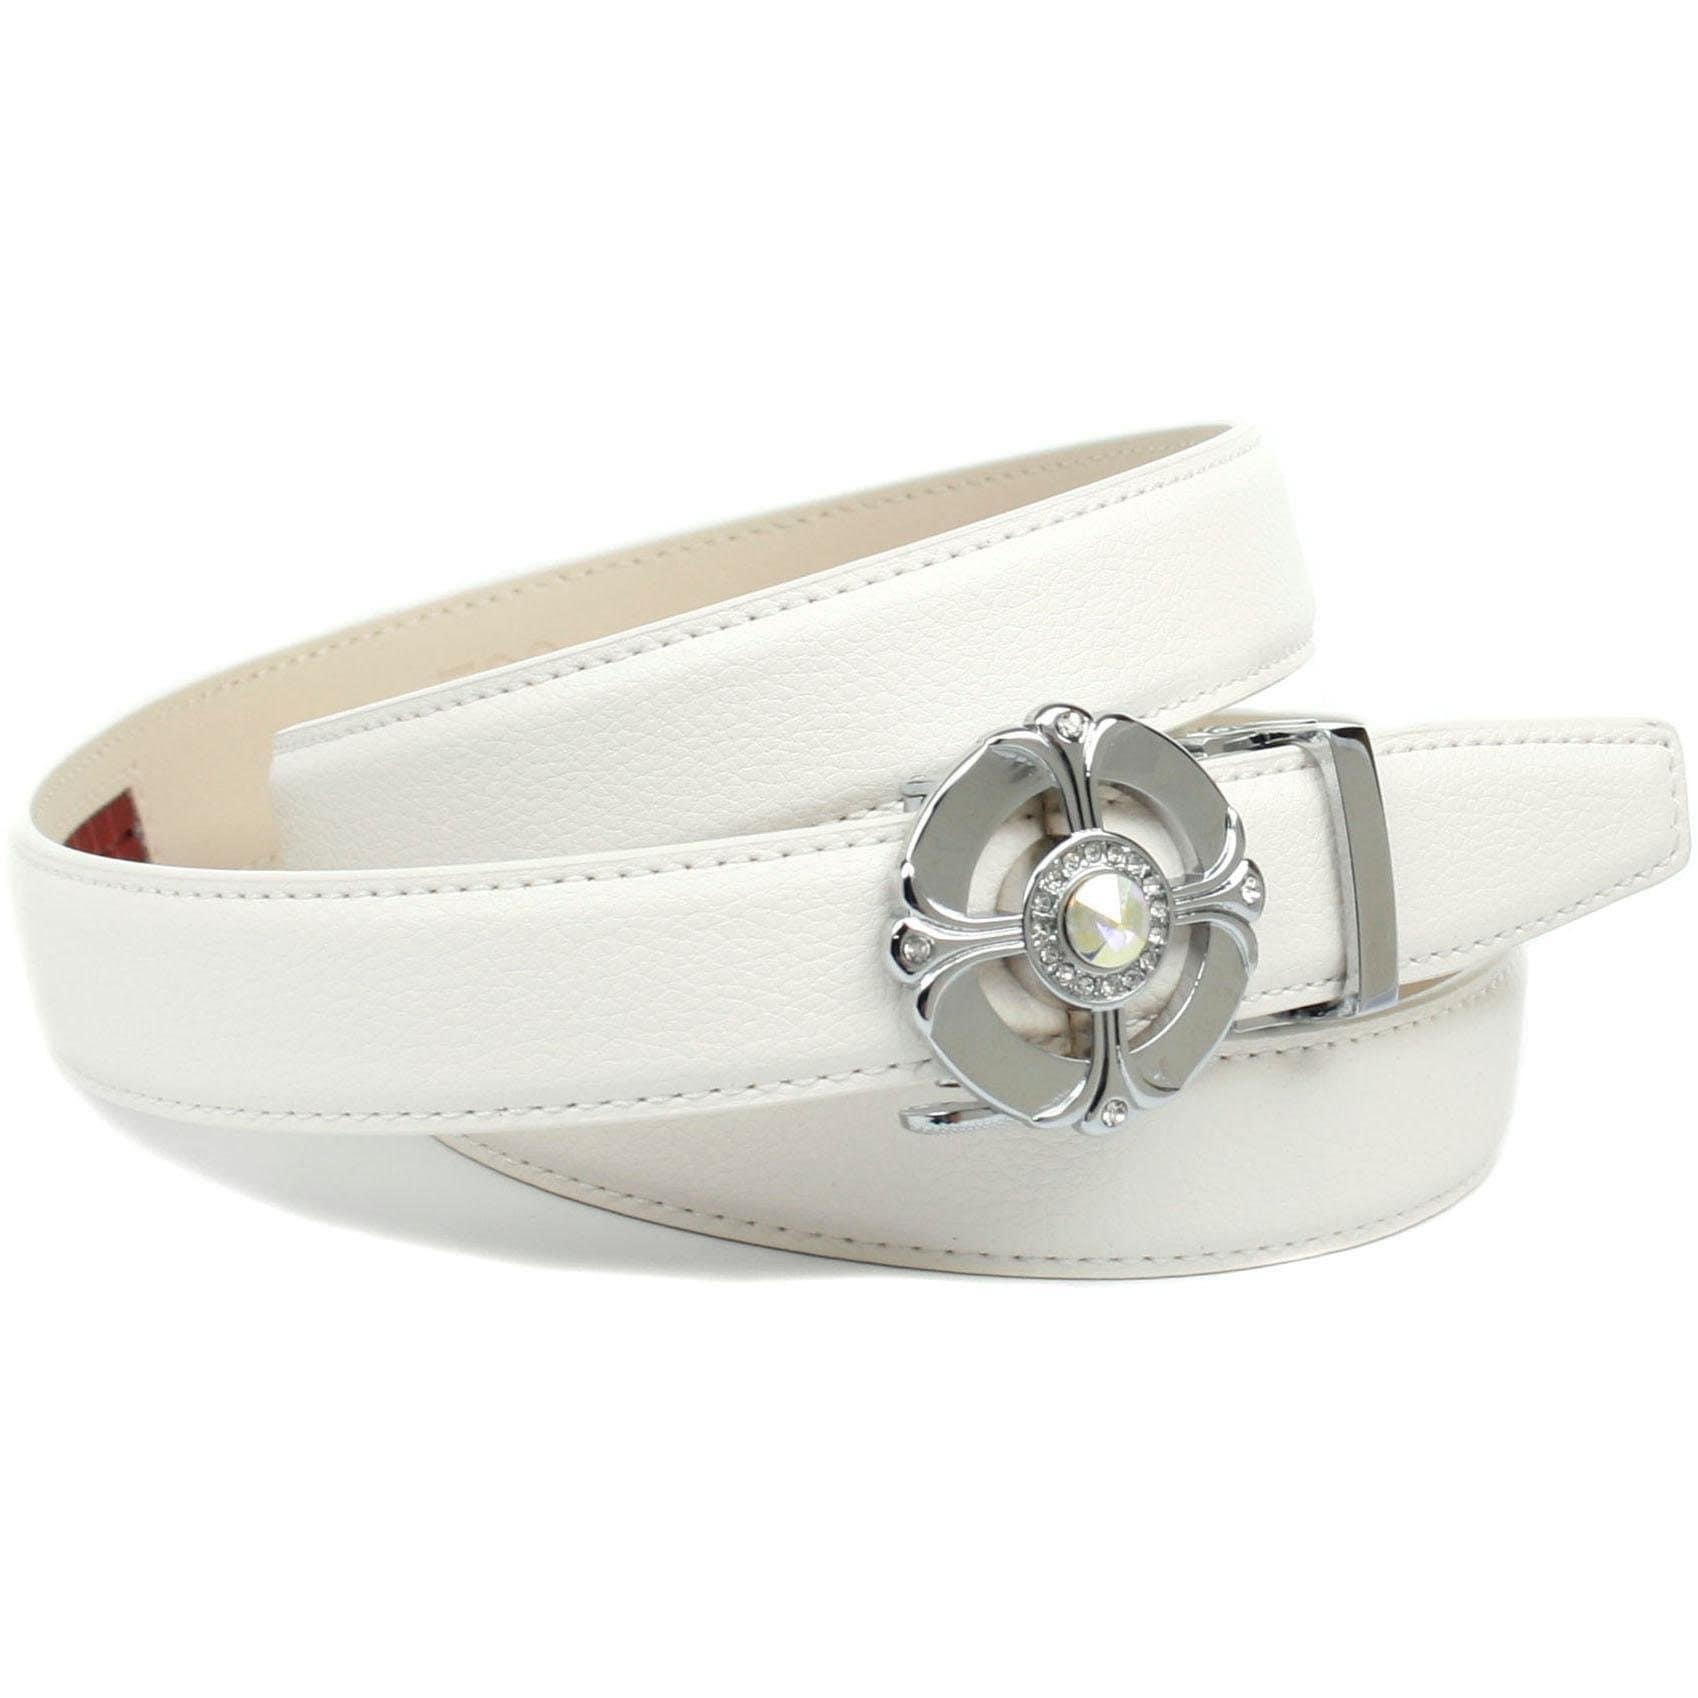 Anthoni Crown Ledergürtel Femininer Ledergürtel in weiß mit runder Schließe